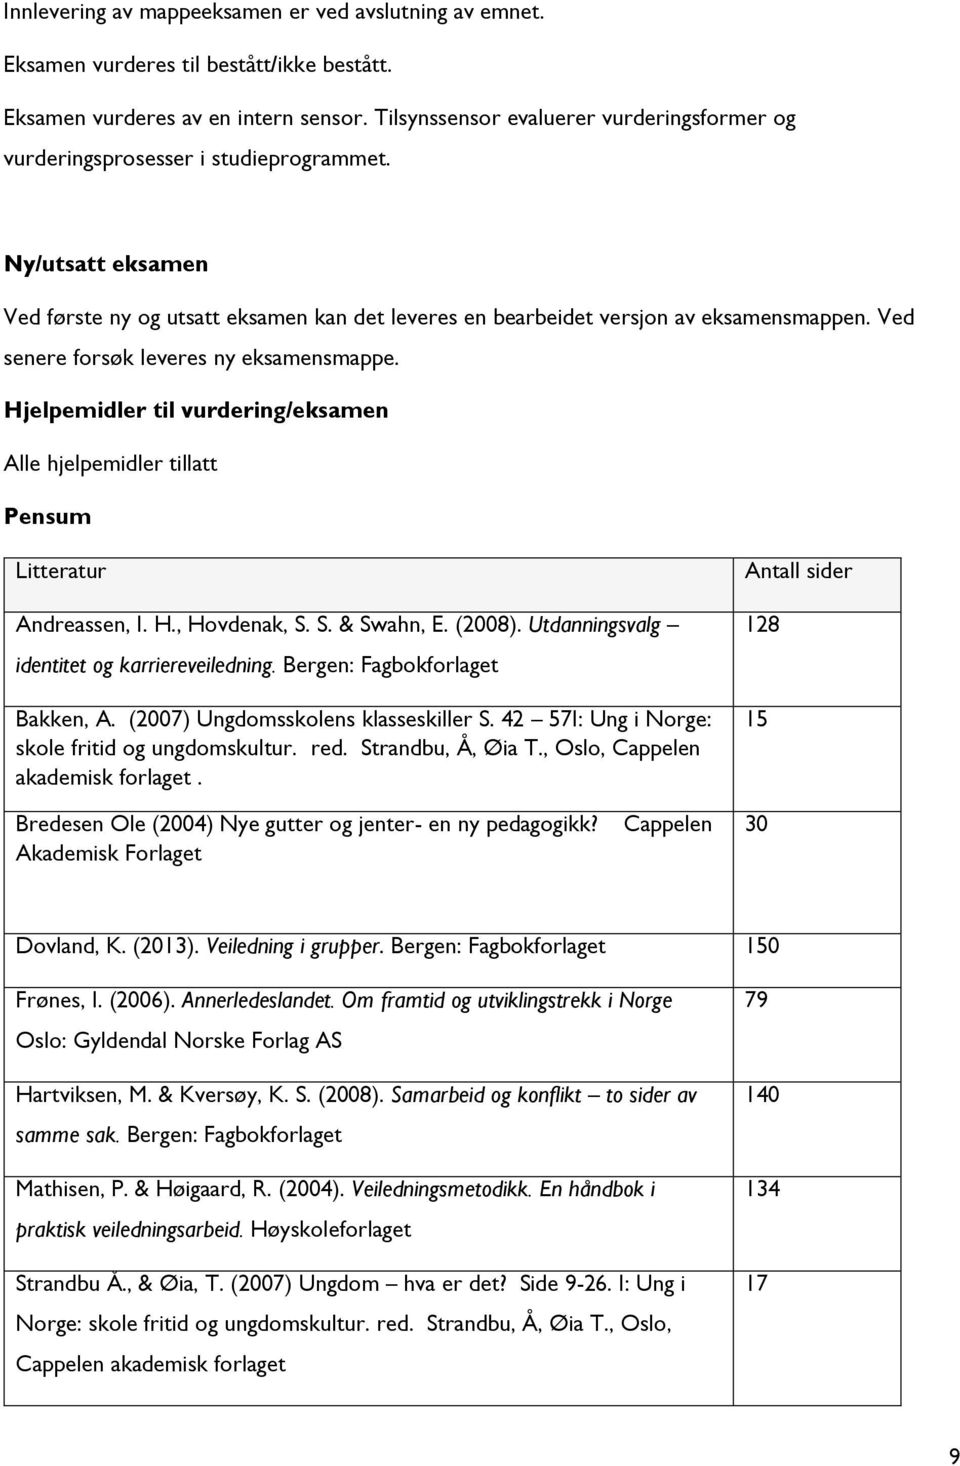 Ved senere forsøk leveres ny eksamensmappe. Hjelpemidler til vurdering/eksamen Alle hjelpemidler tillatt Pensum Litteratur Andreassen, I. H., Hovdenak, S. S. & Swahn, E. (2008).